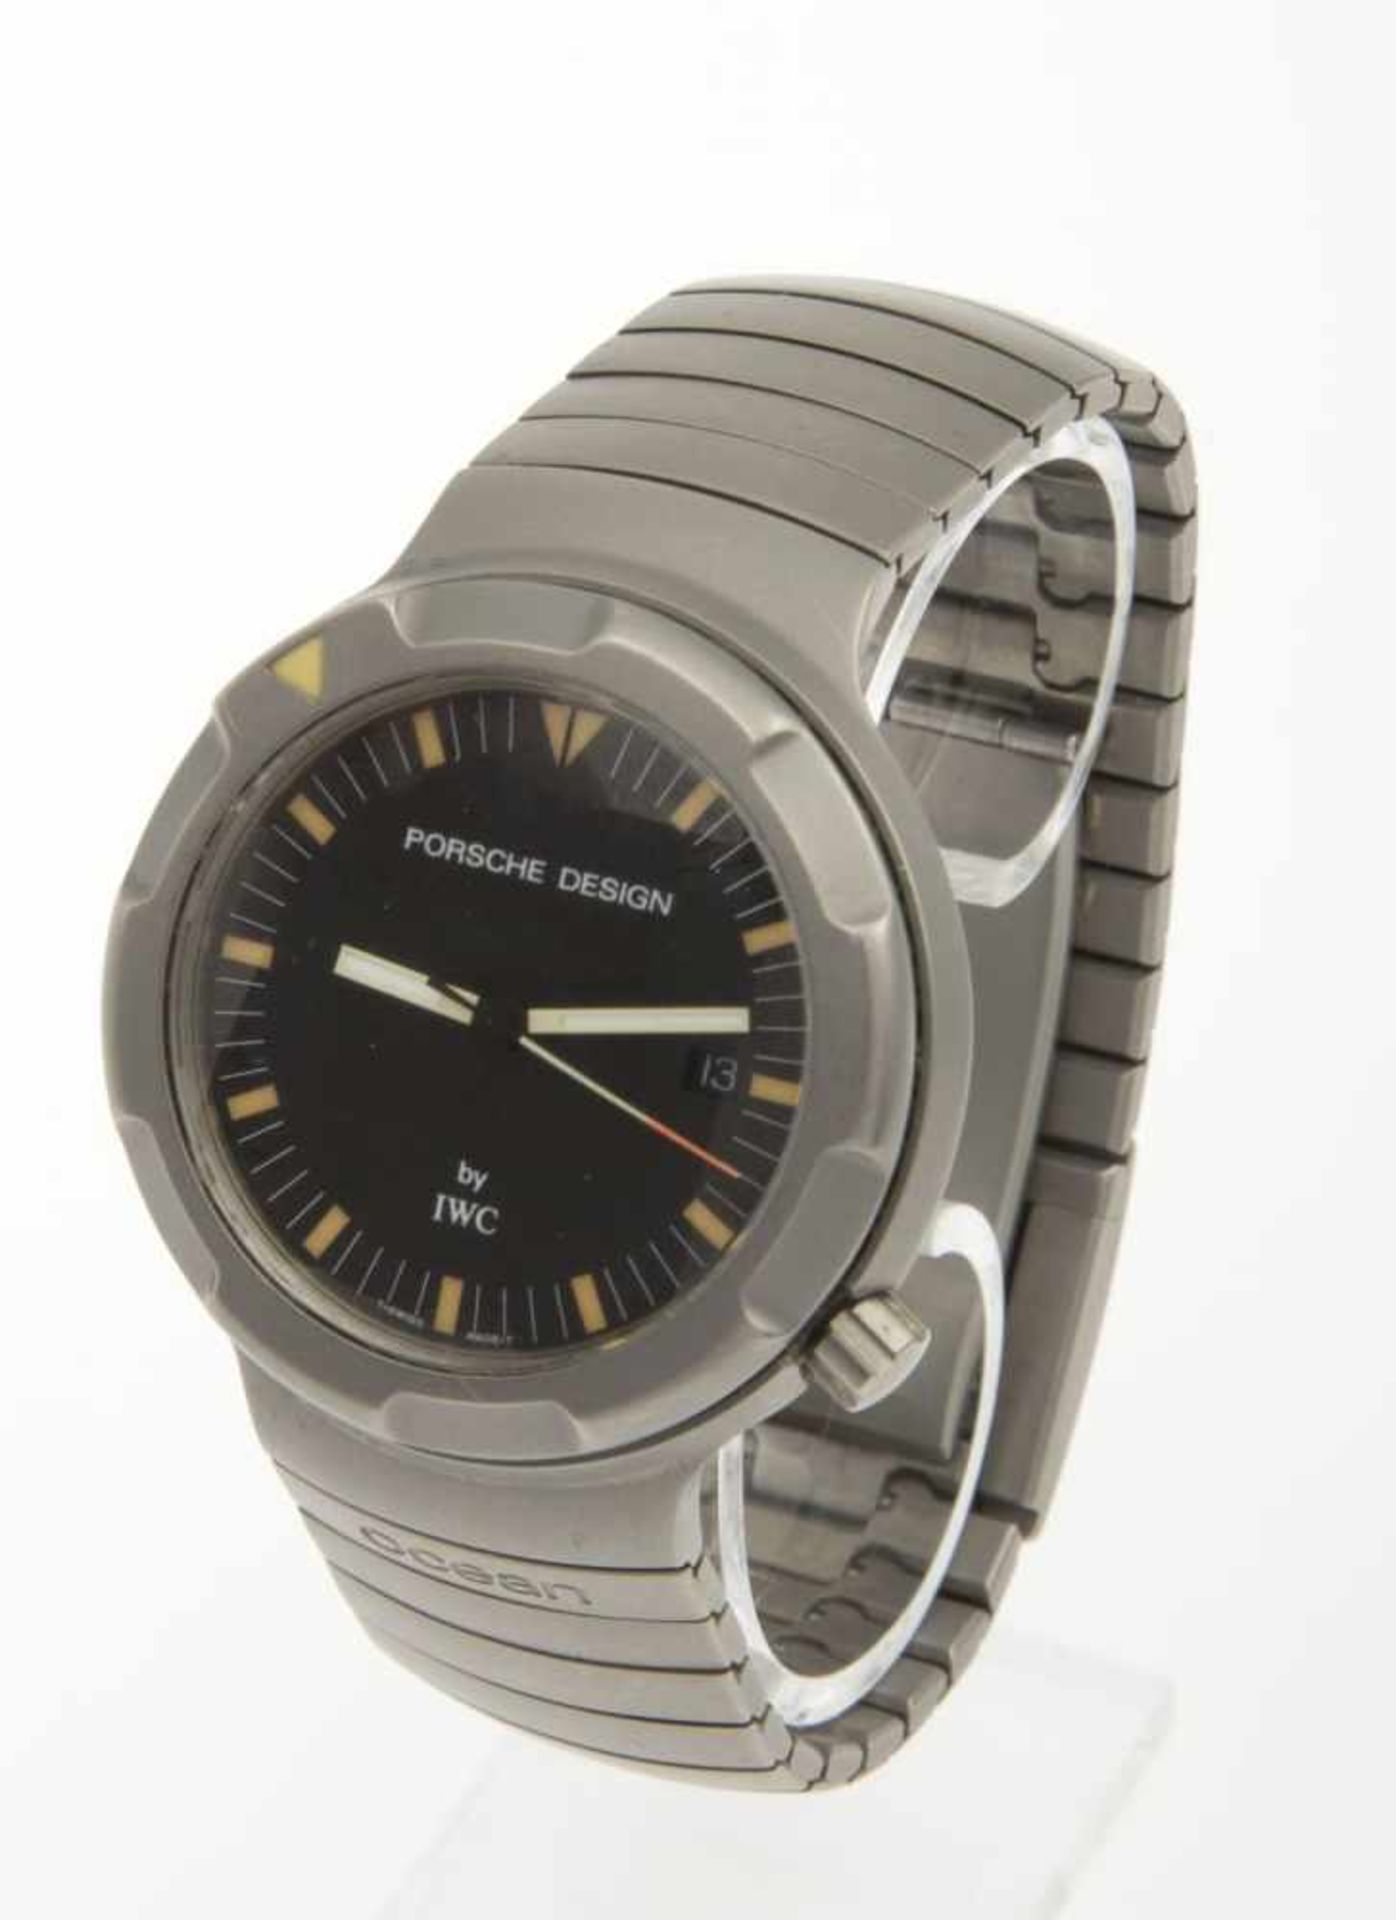 Automatische IWC-Armbanduhr Ocean by Porsche DesignGehäuse und Armband aus mattiertem Titan.